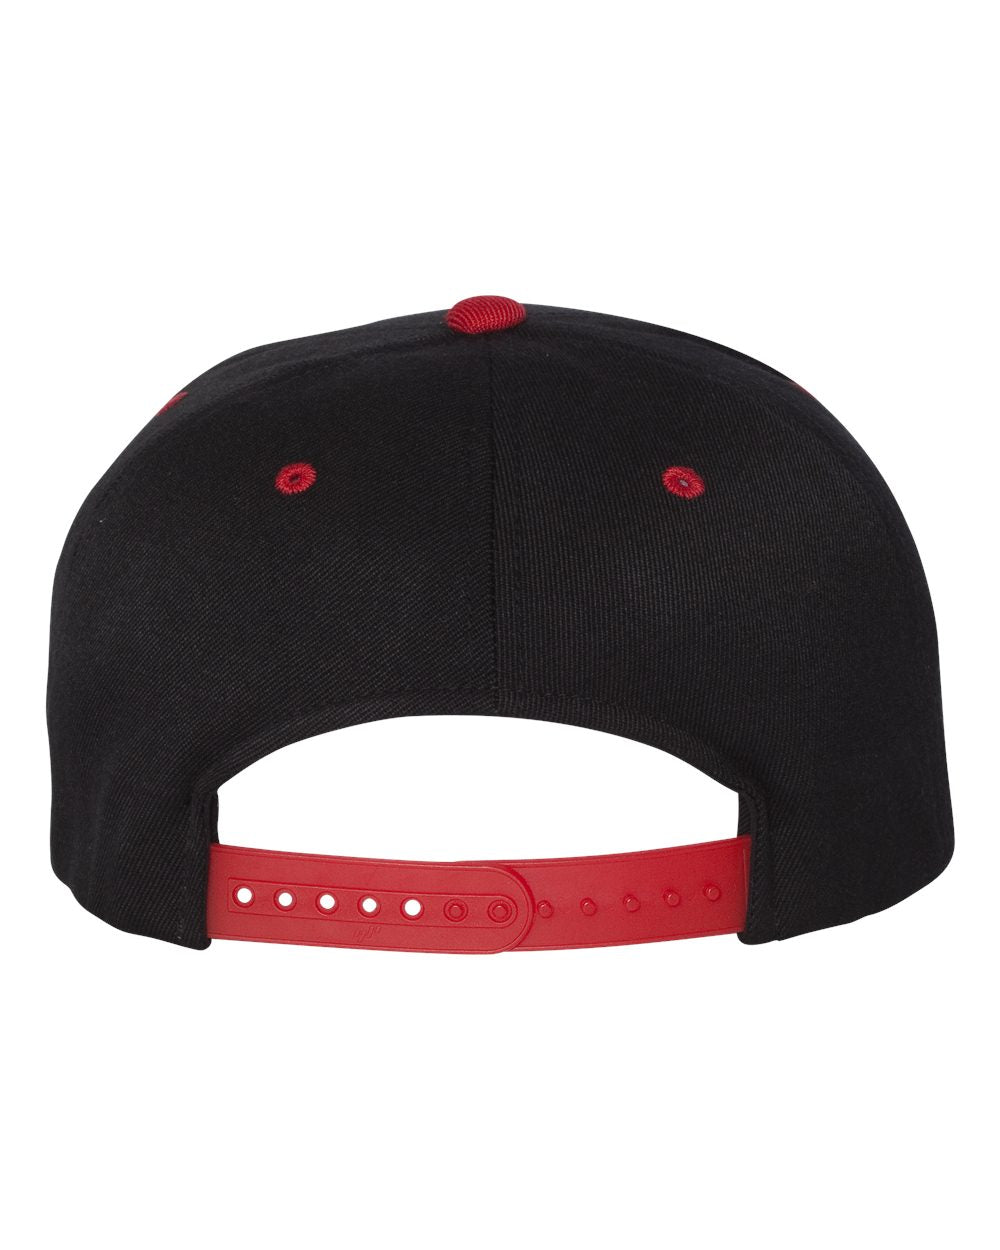 Flexfit 110® Flat Bill Snapback Cap 110F #color_Black/ Red